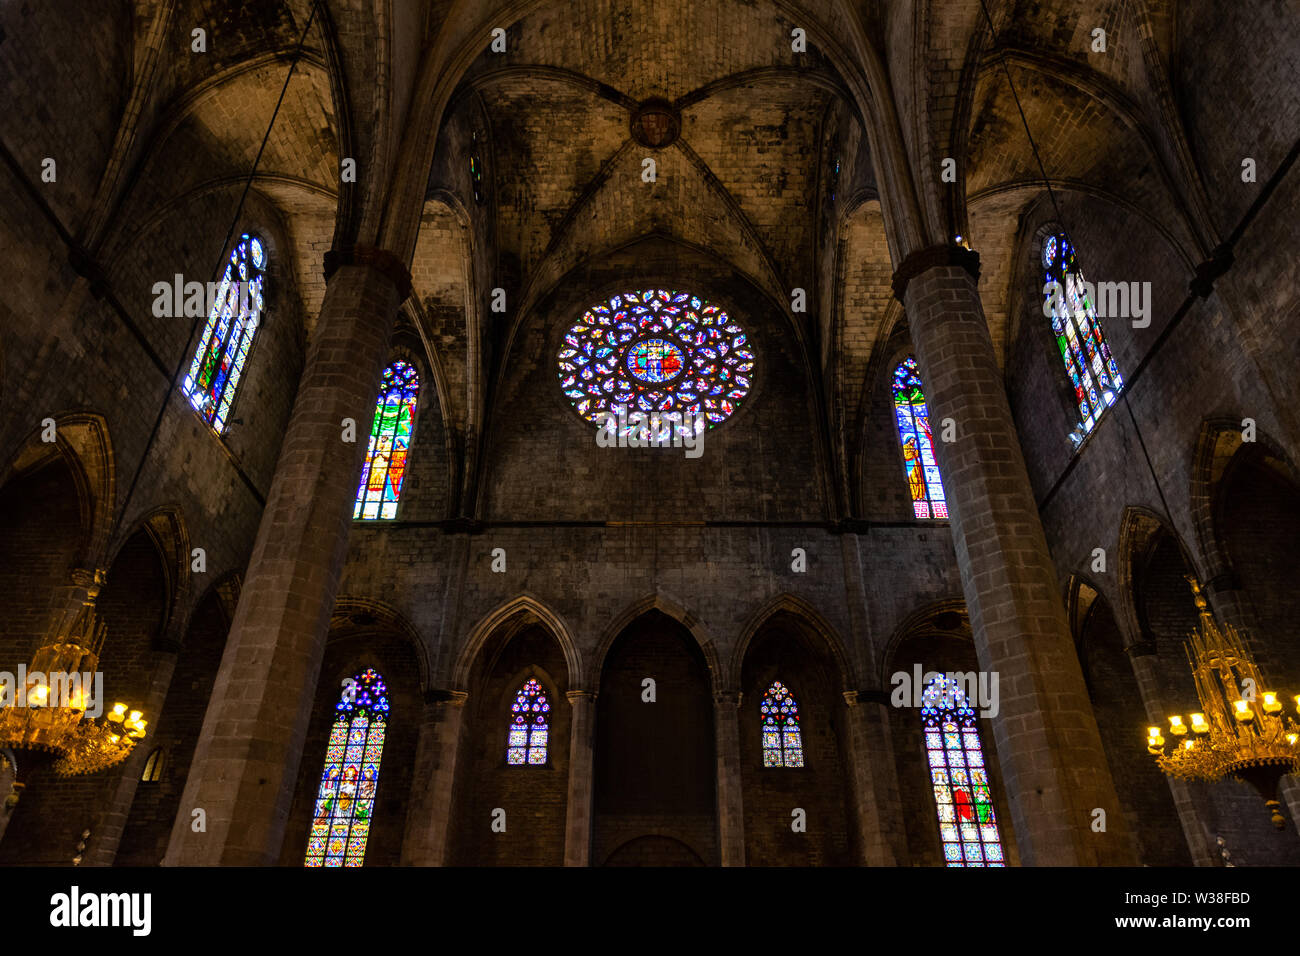 Interior de la Basílica de Santa Maria del Mar en el típico estilo gótico catalán con arcos apuntados y altas columnas. Detalle del colorido rosetón. La Foto de stock